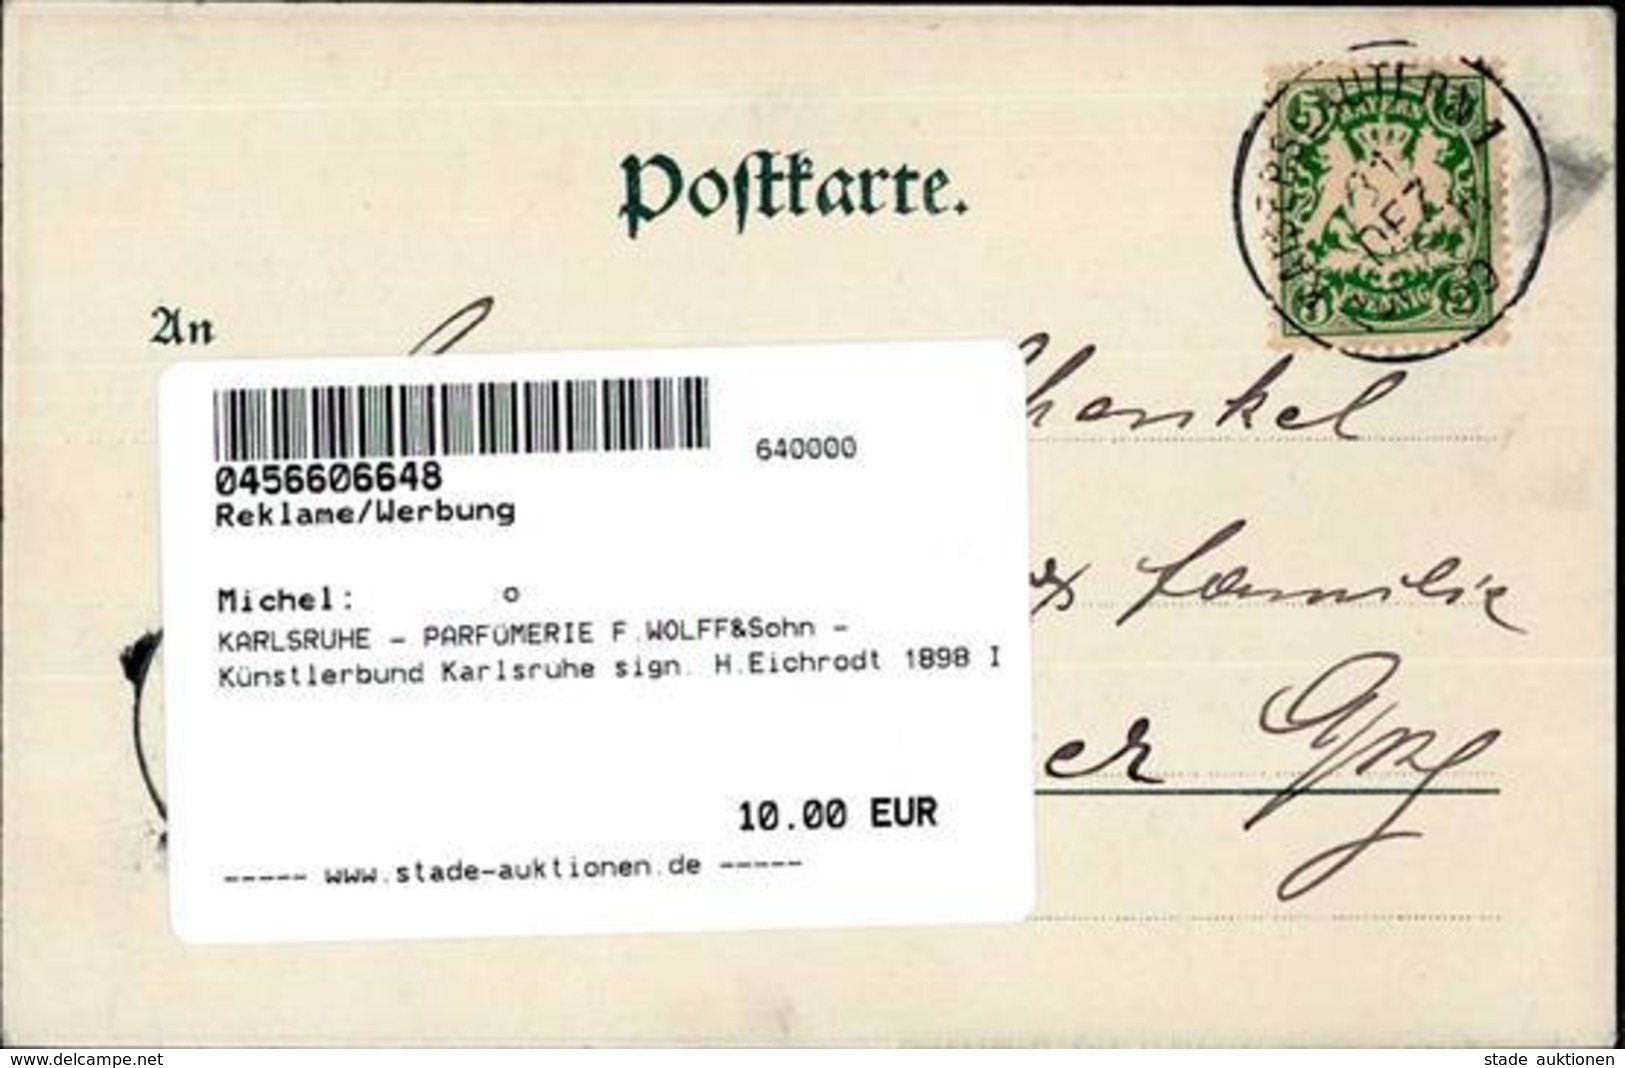 KARLSRUHE - PARFÜMERIE F.WOLFF&Sohn - Künstlerbund Karlsruhe Sign. H.Eichrodt 1898 I - Werbepostkarten